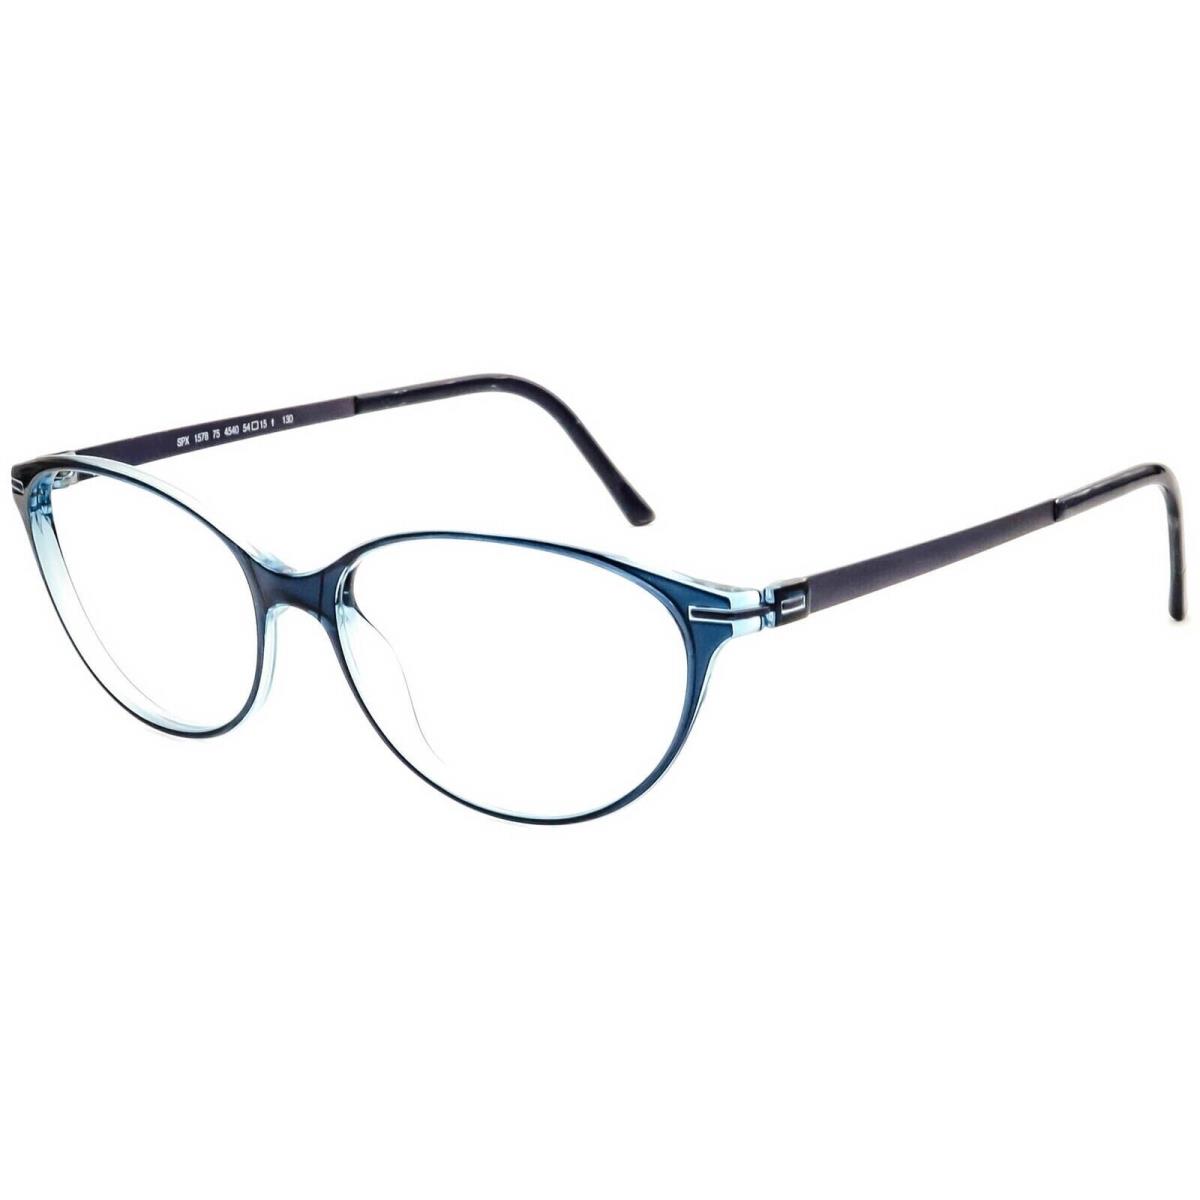 Silhouette Spx 1578 4540 Blue Optical Frame Eyeglasses 54mm